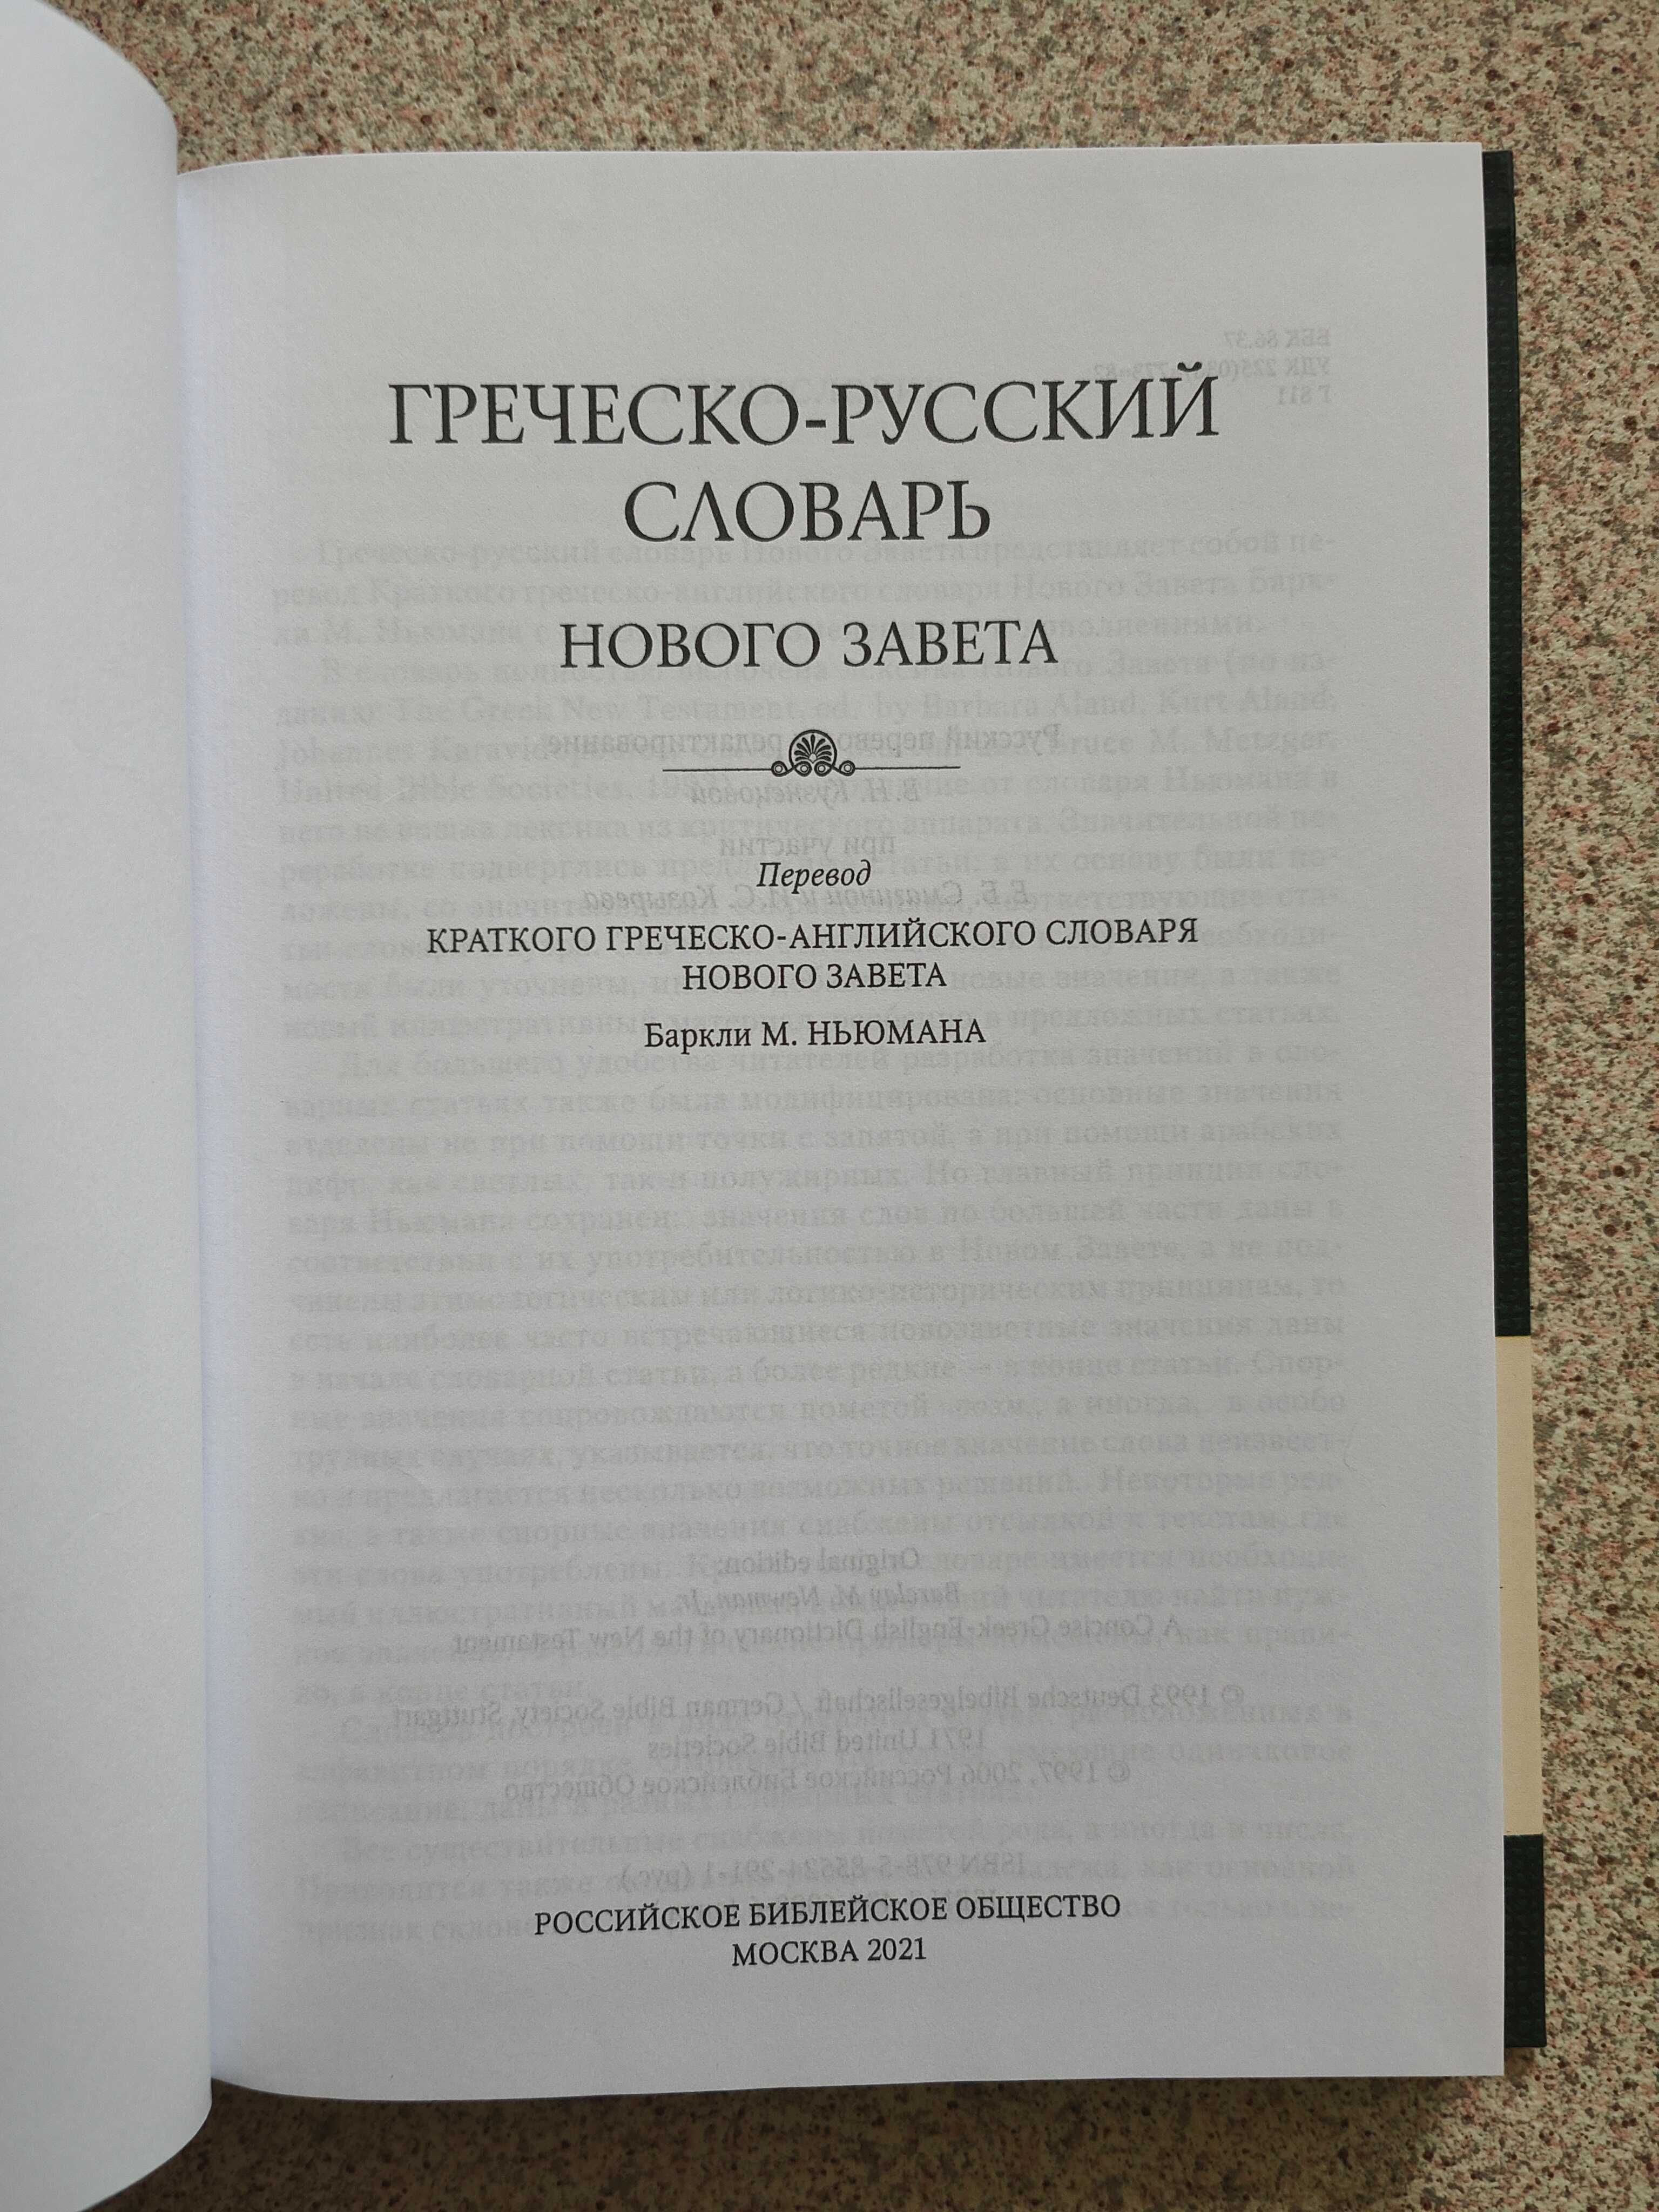 Греческо-русский словарь Нового Завета Баркли М. Ньюмана